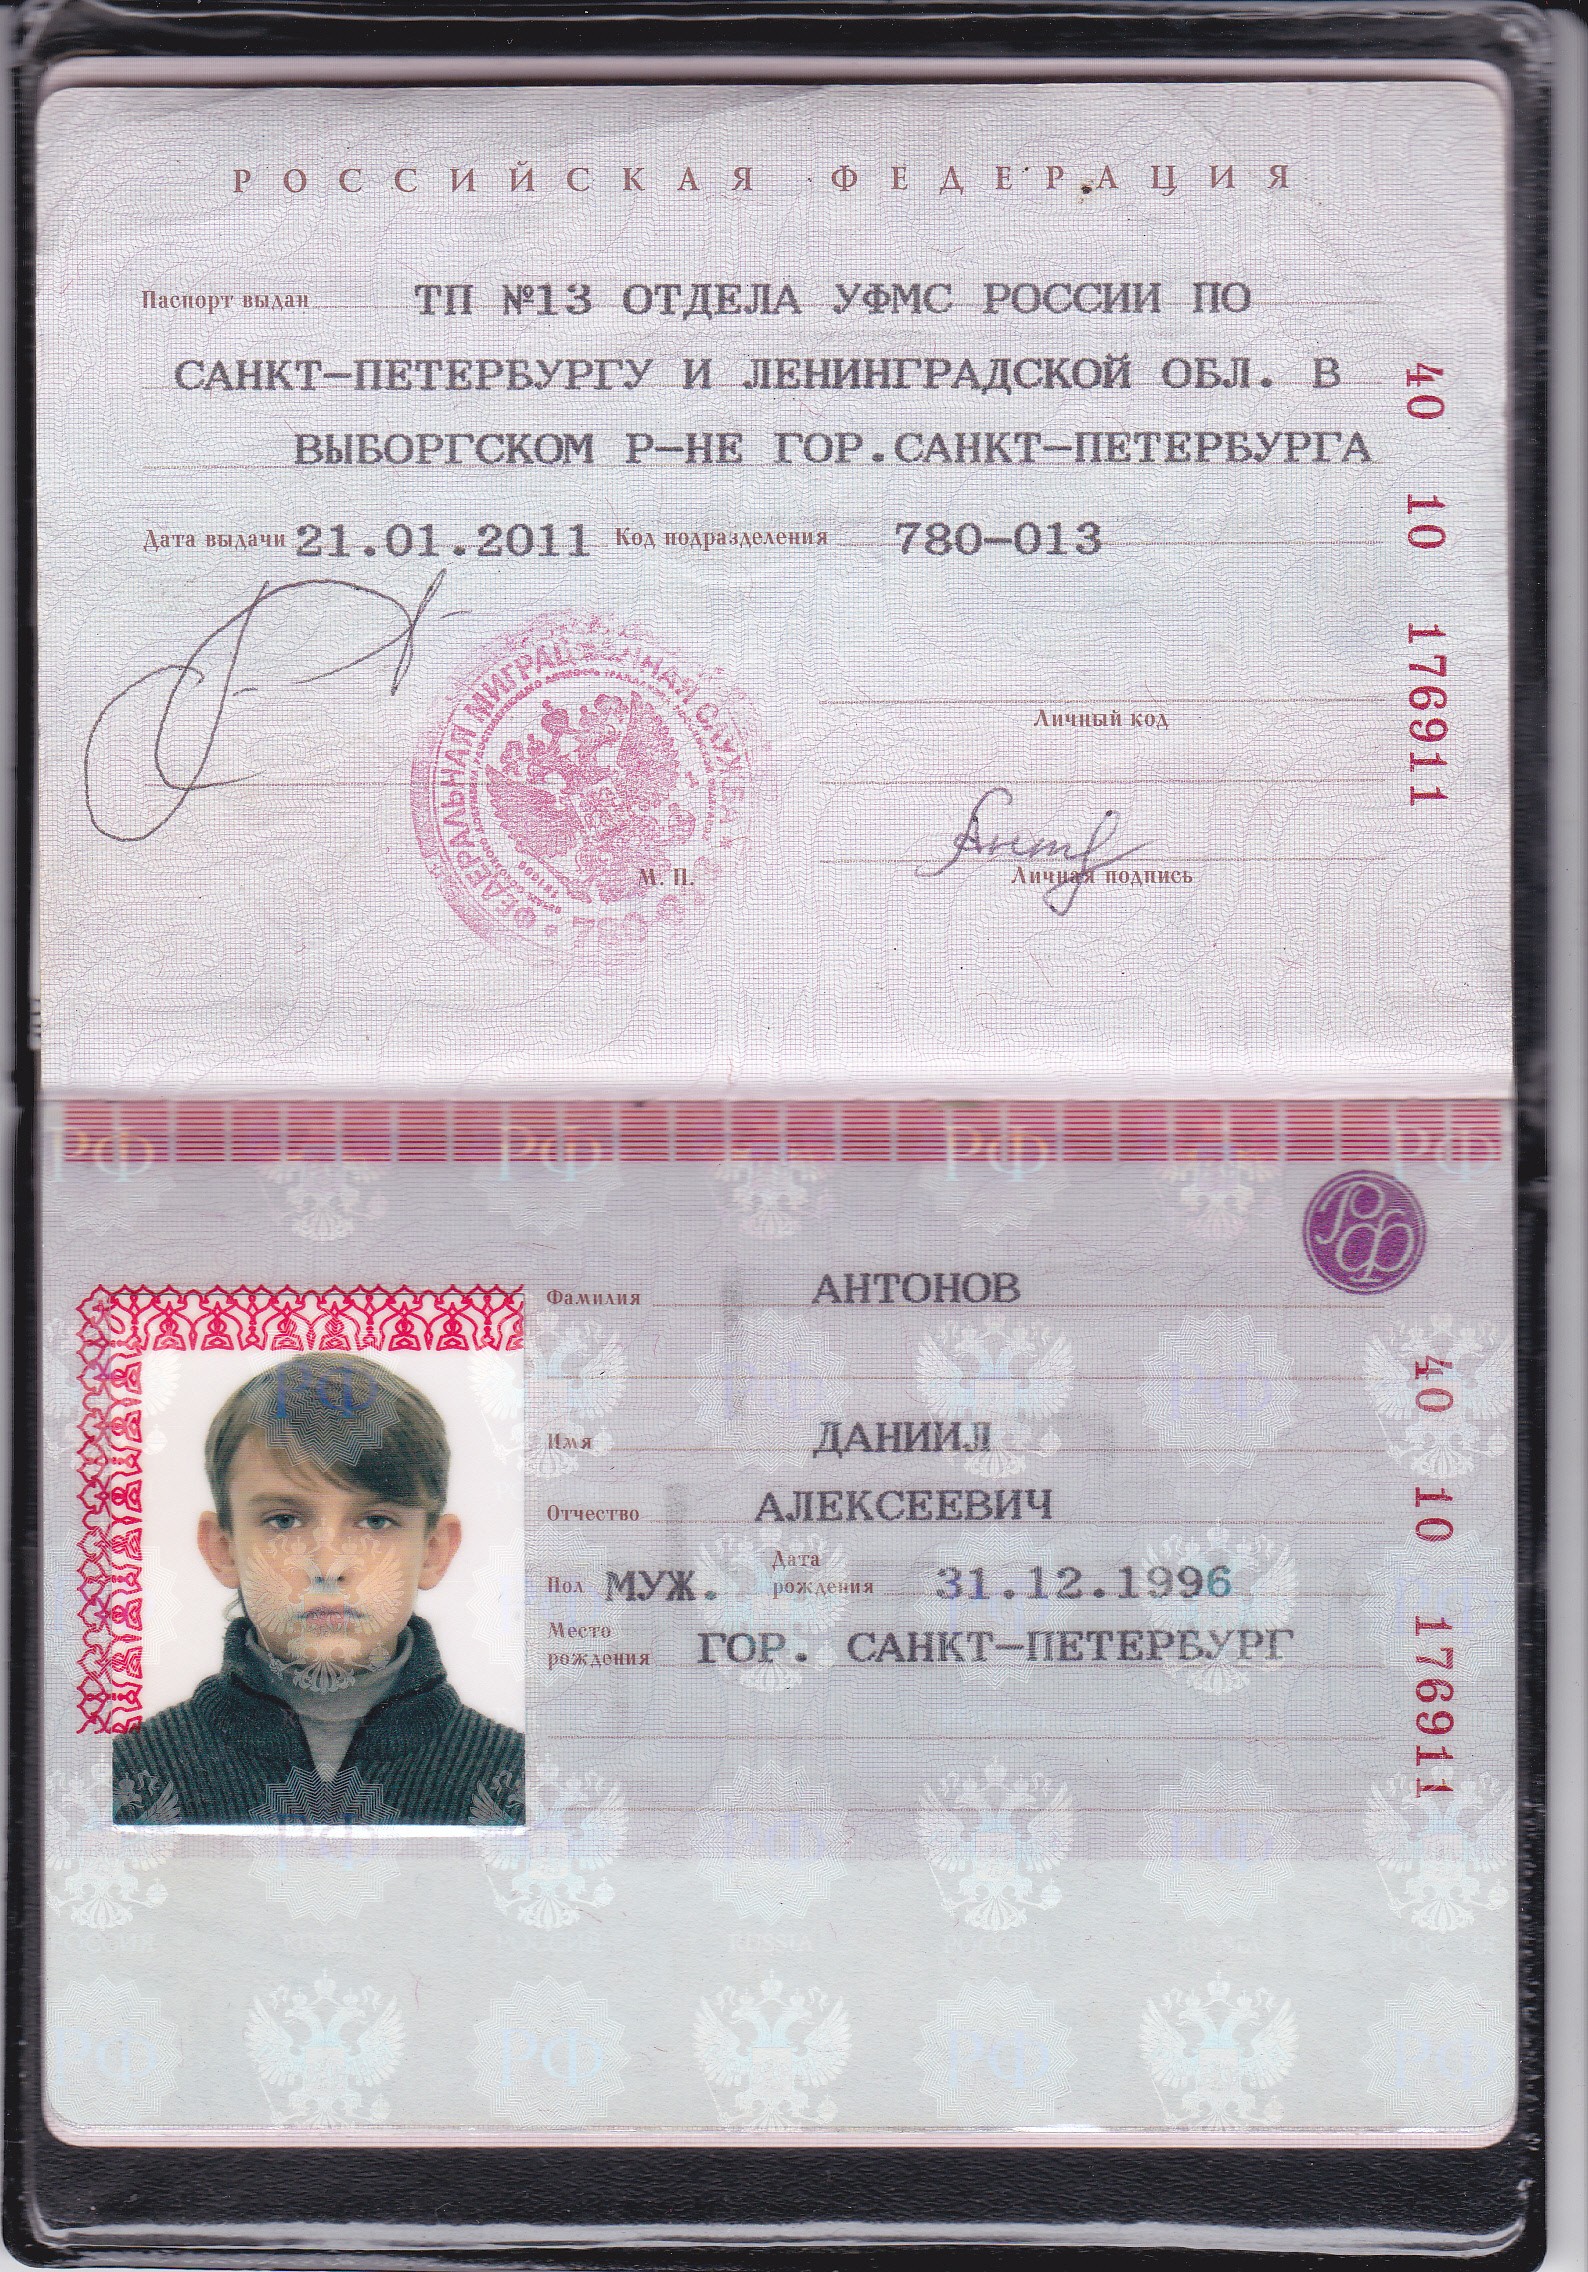 фото паспорта с датой рождения